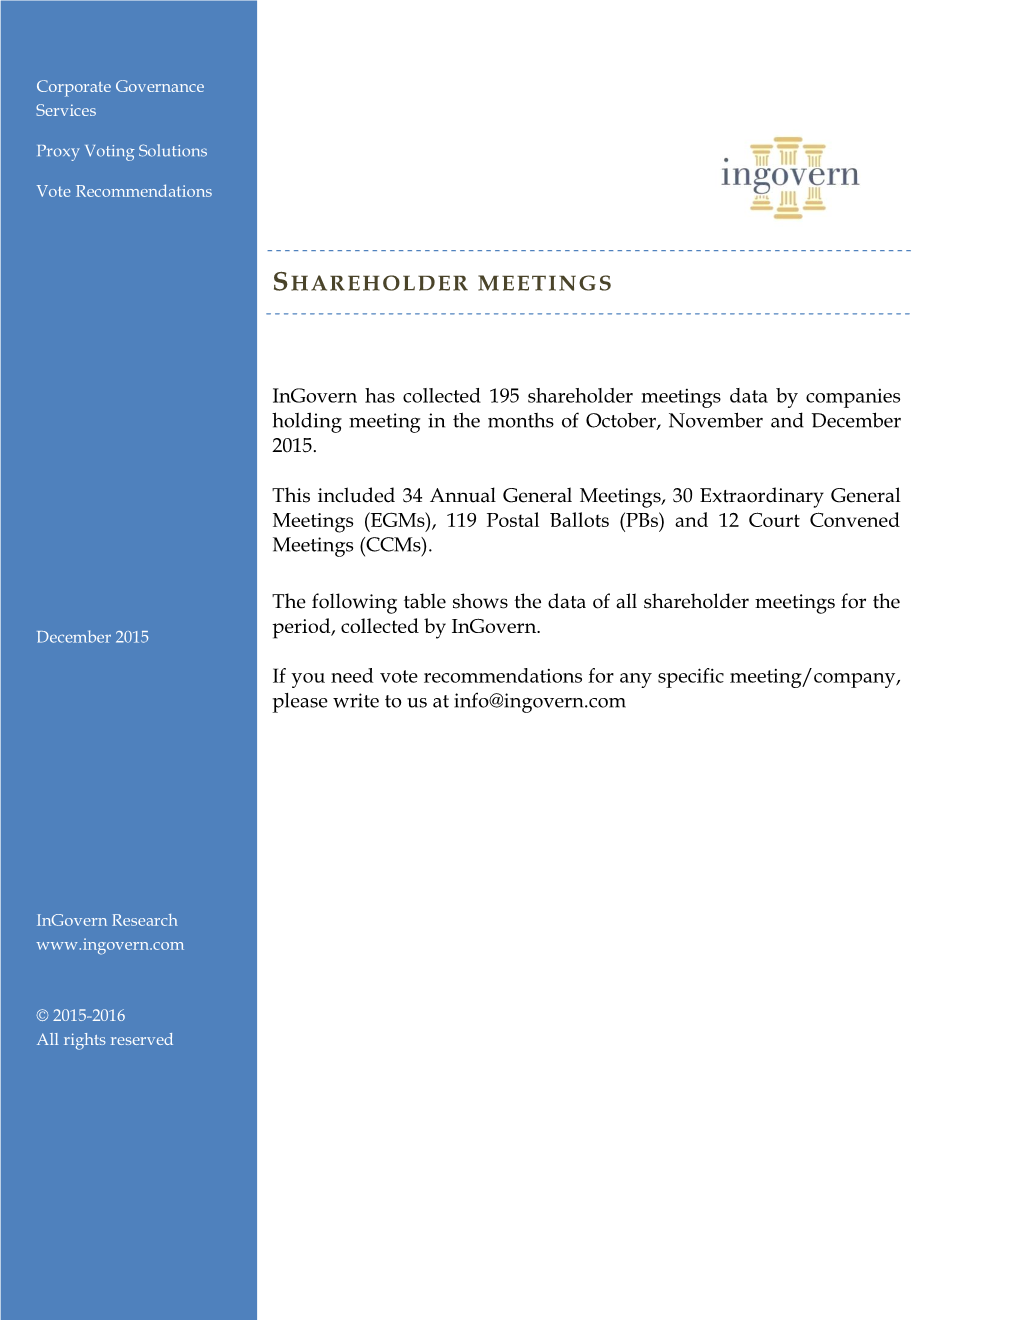 Shareholder Meetings Sep to December 2015